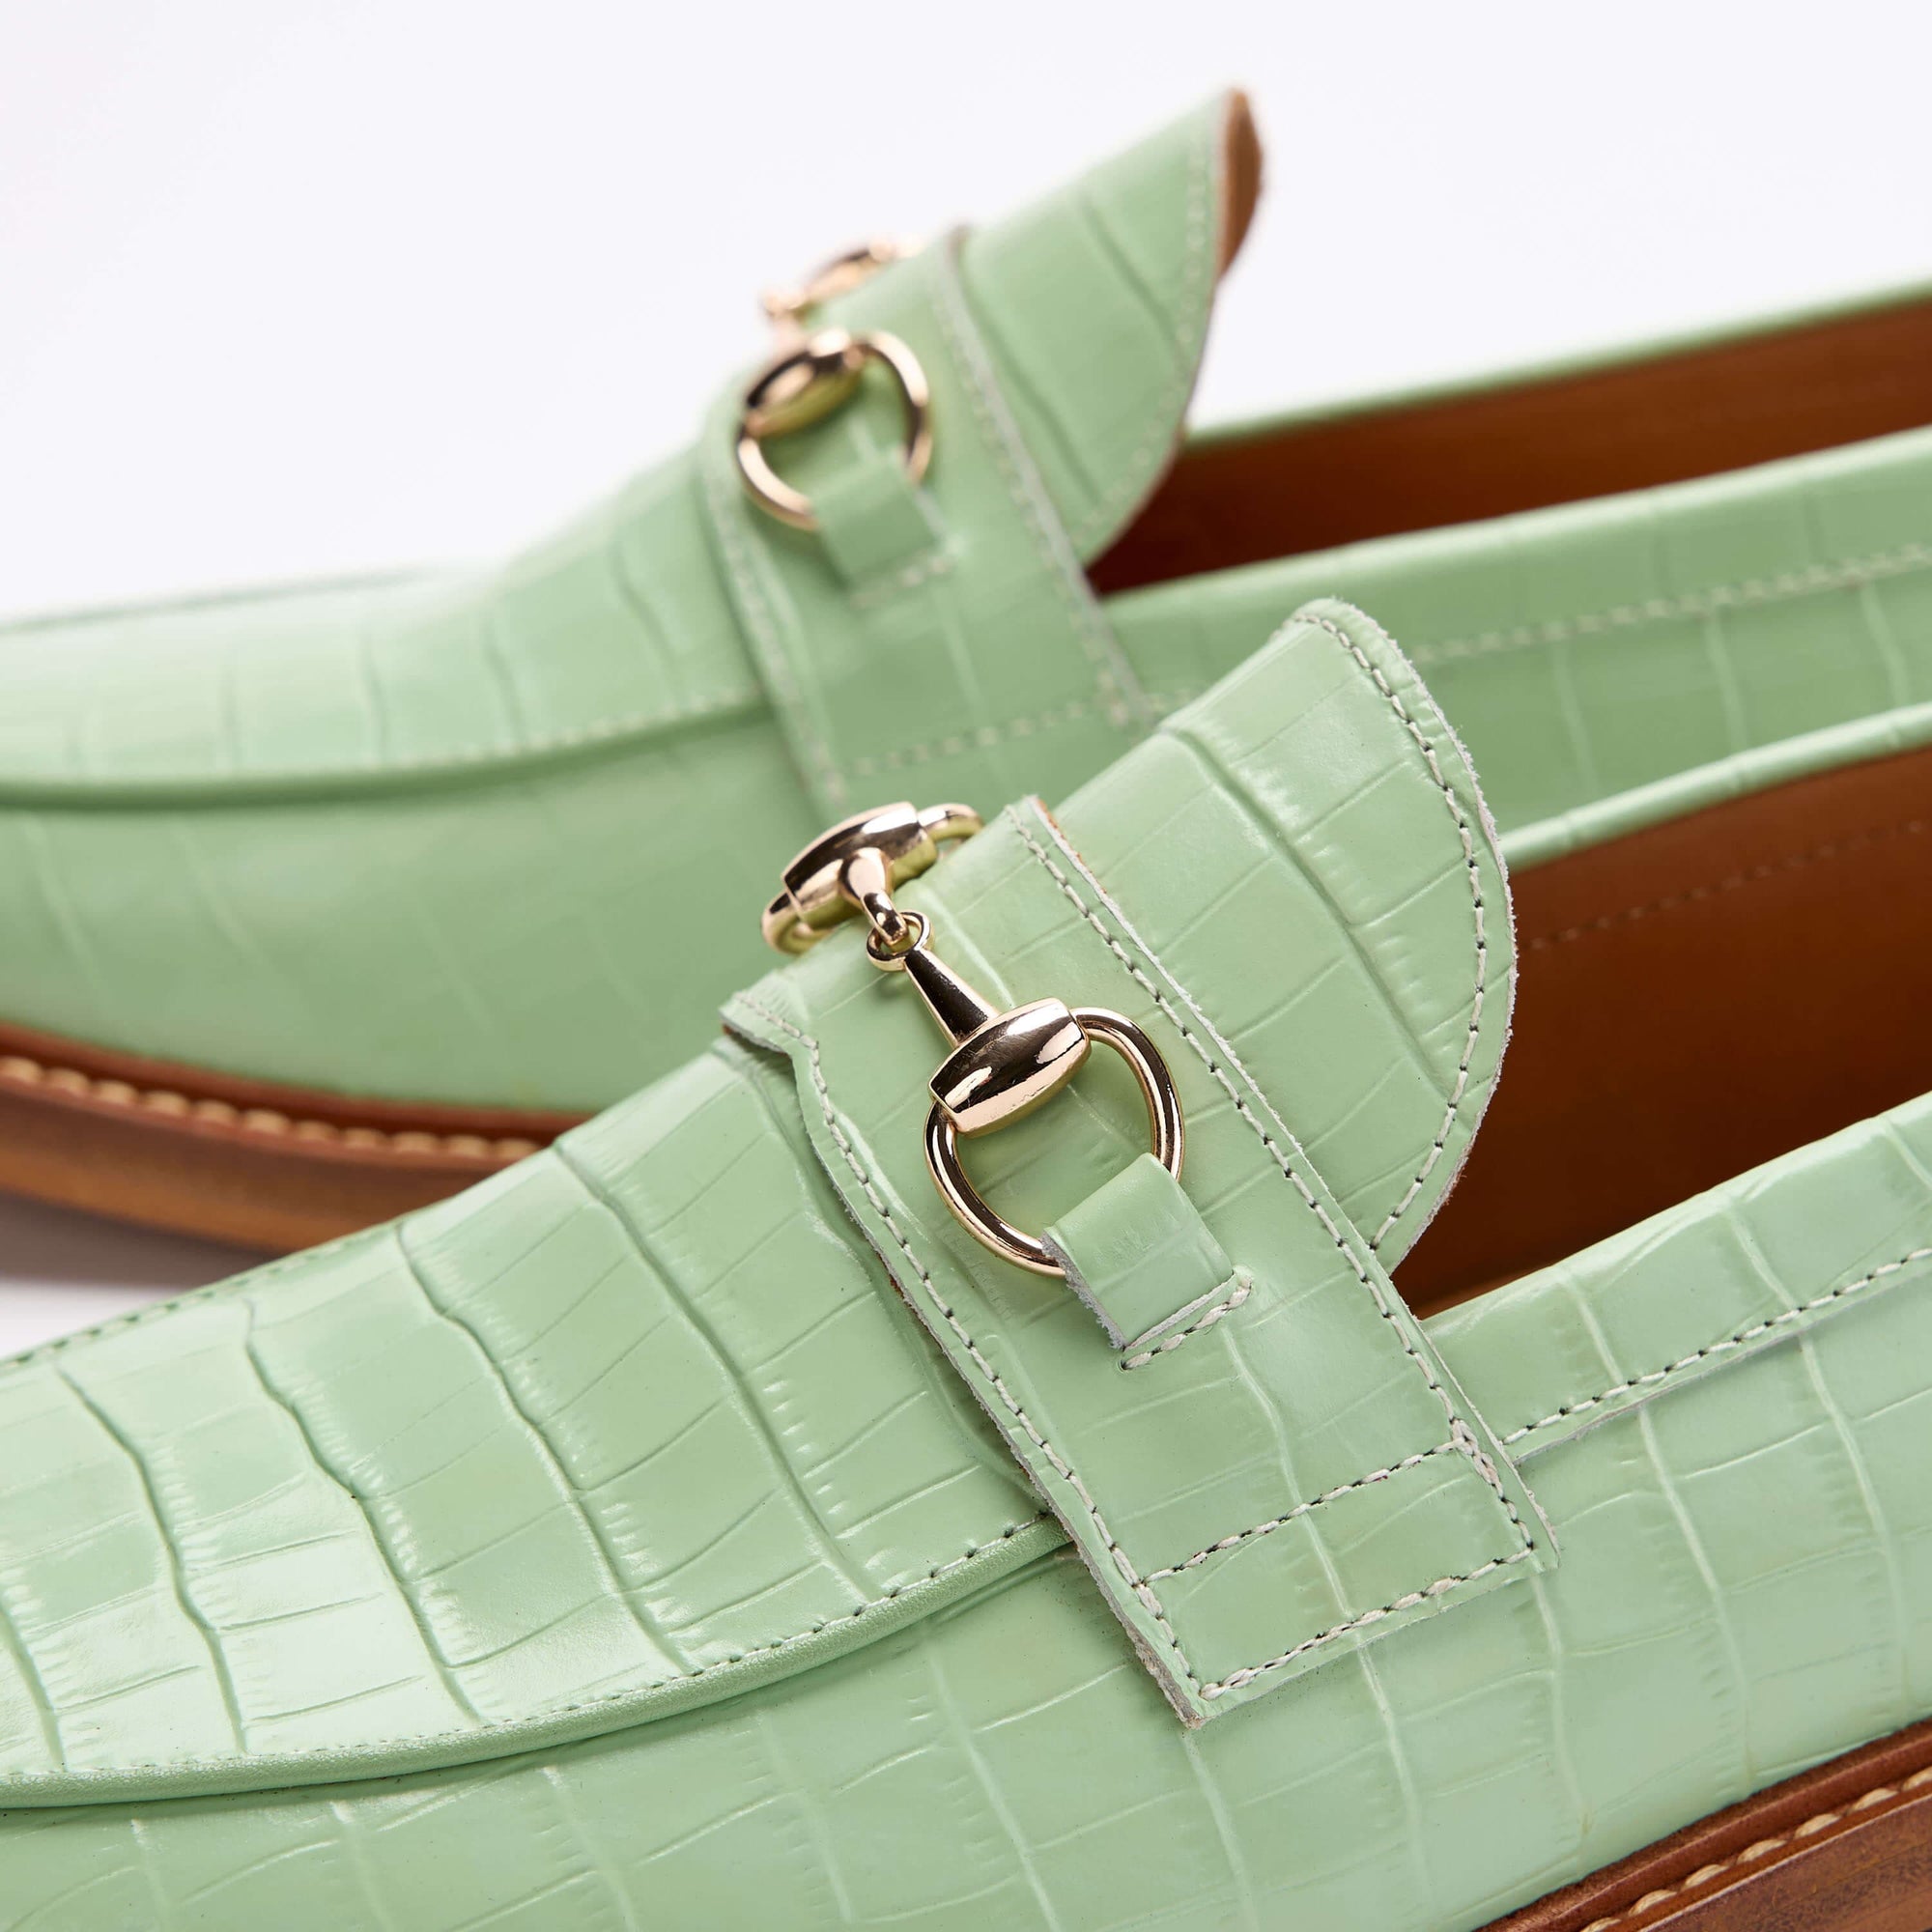 Boardwalk Mint Croc Leather Horse-Bit Loafers